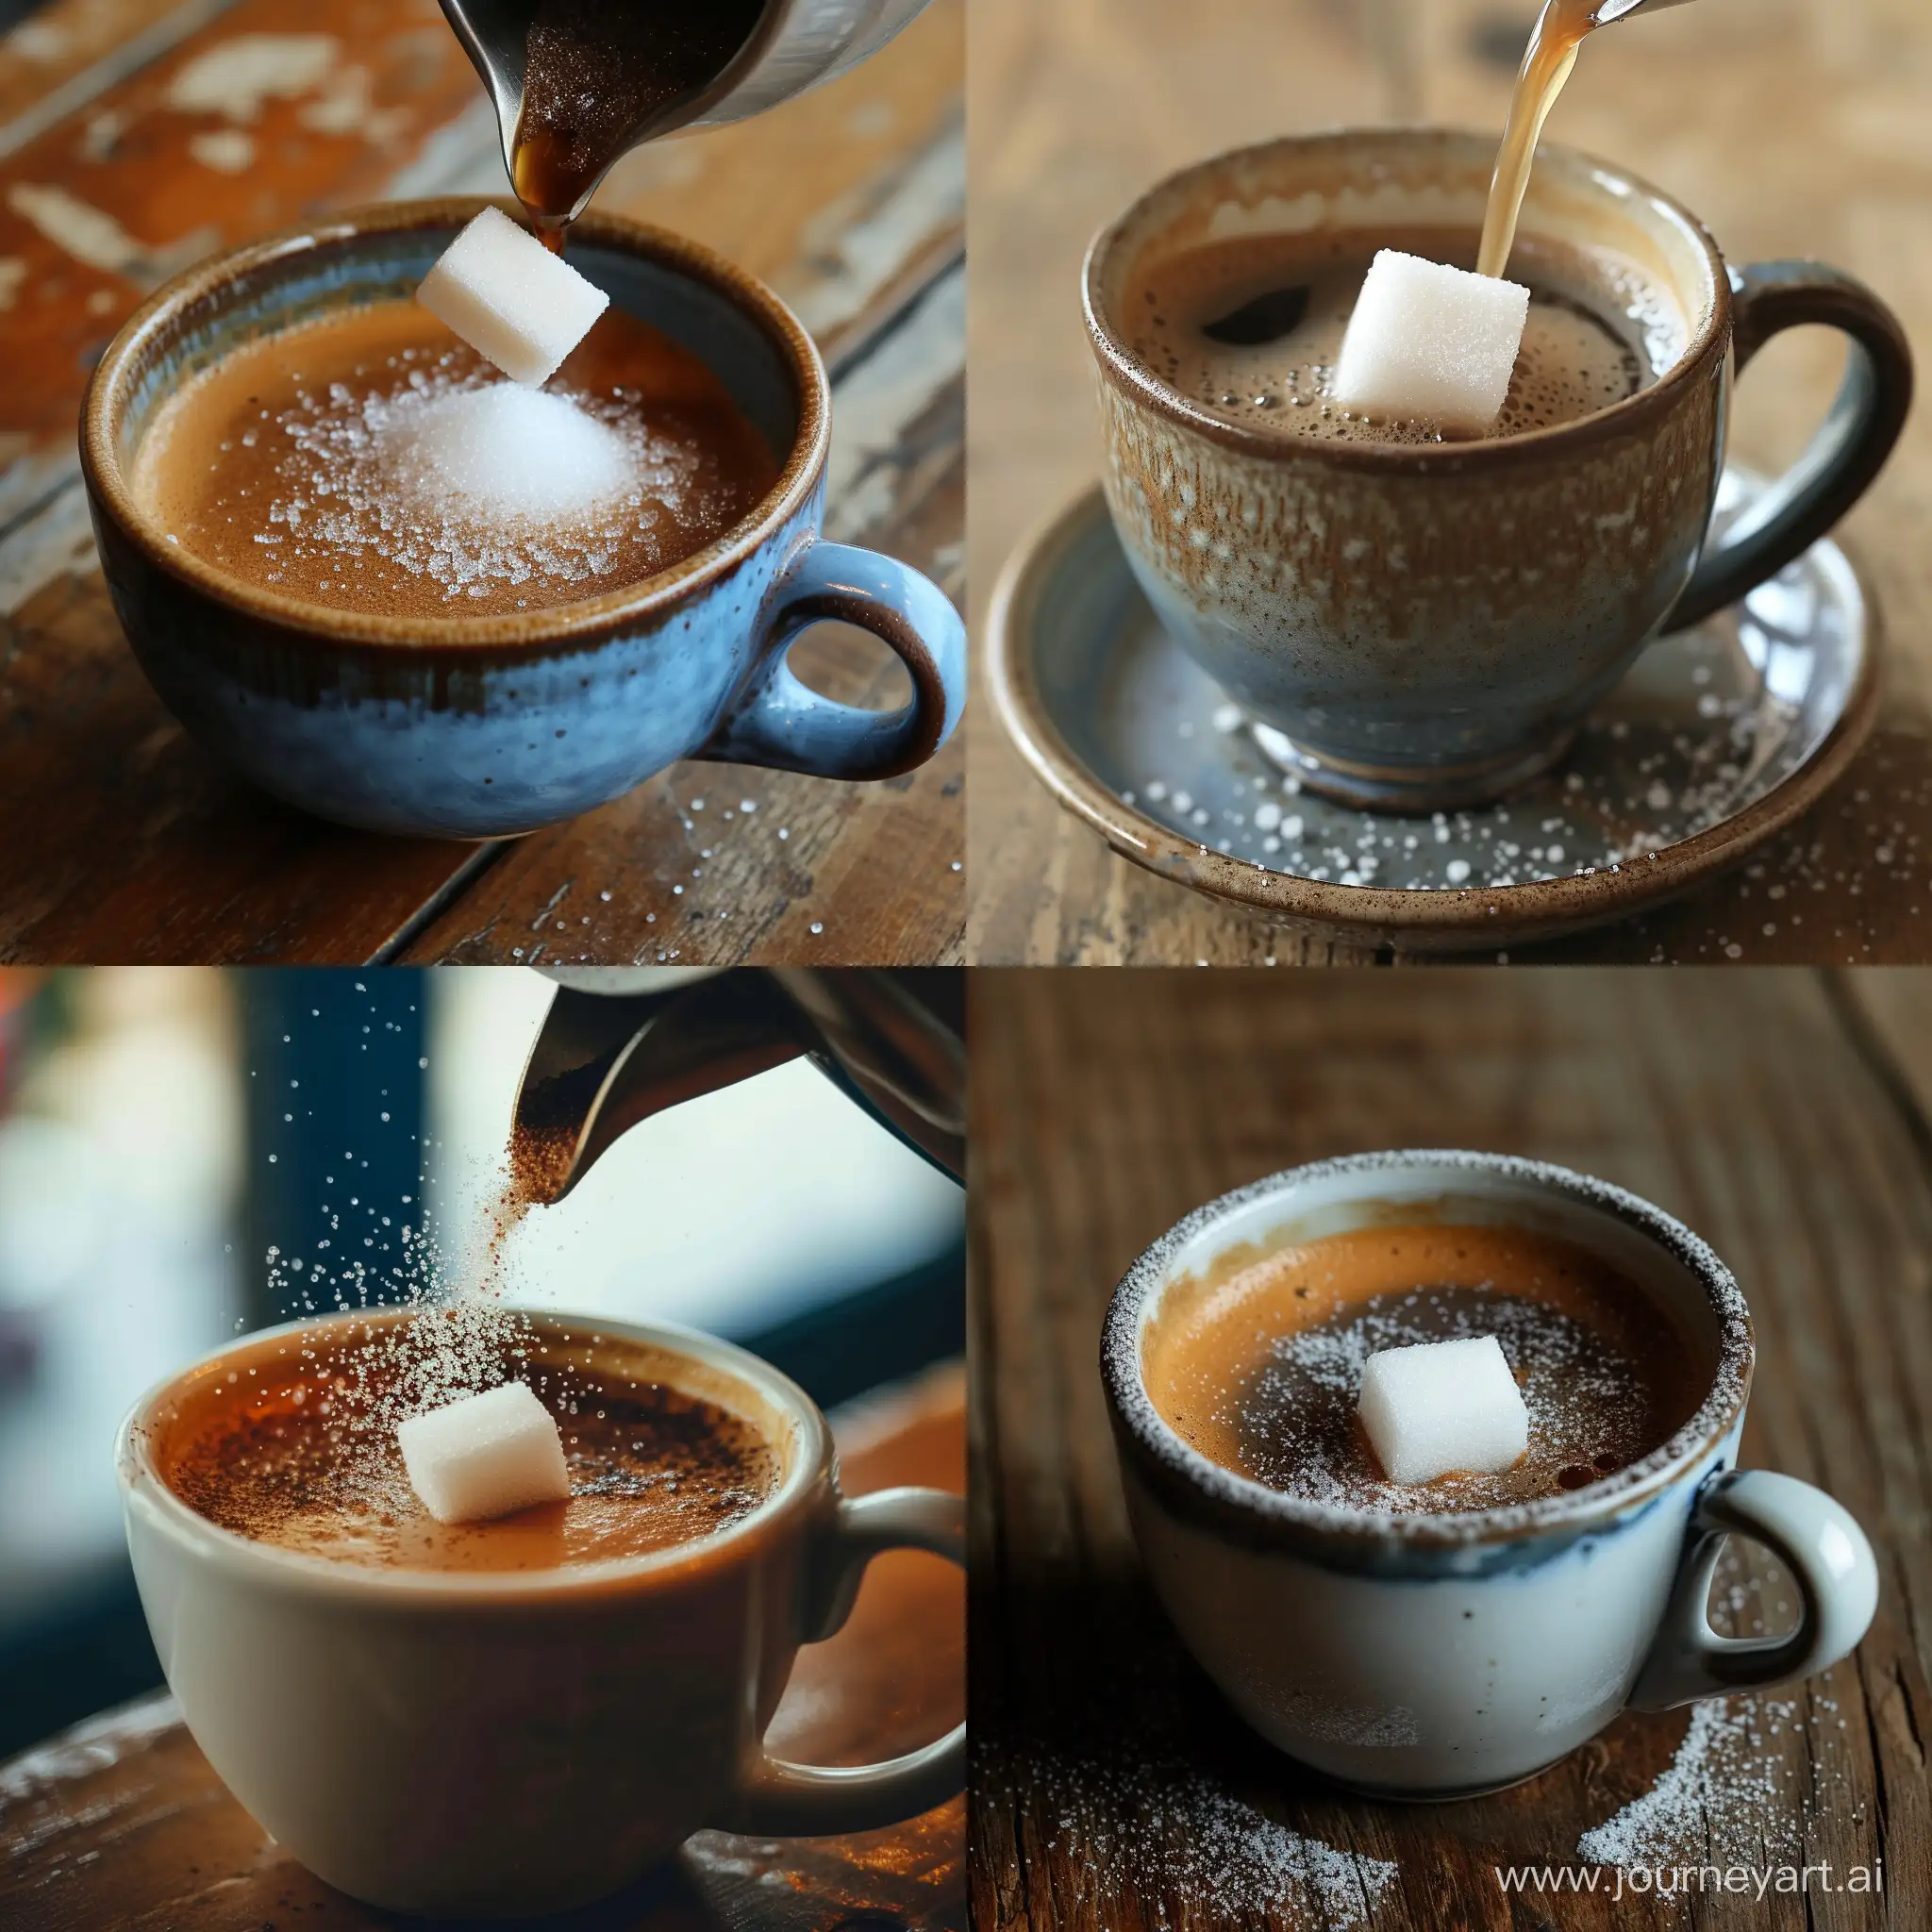 Dissolving-Sugar-in-Coffee-A-Macro-View